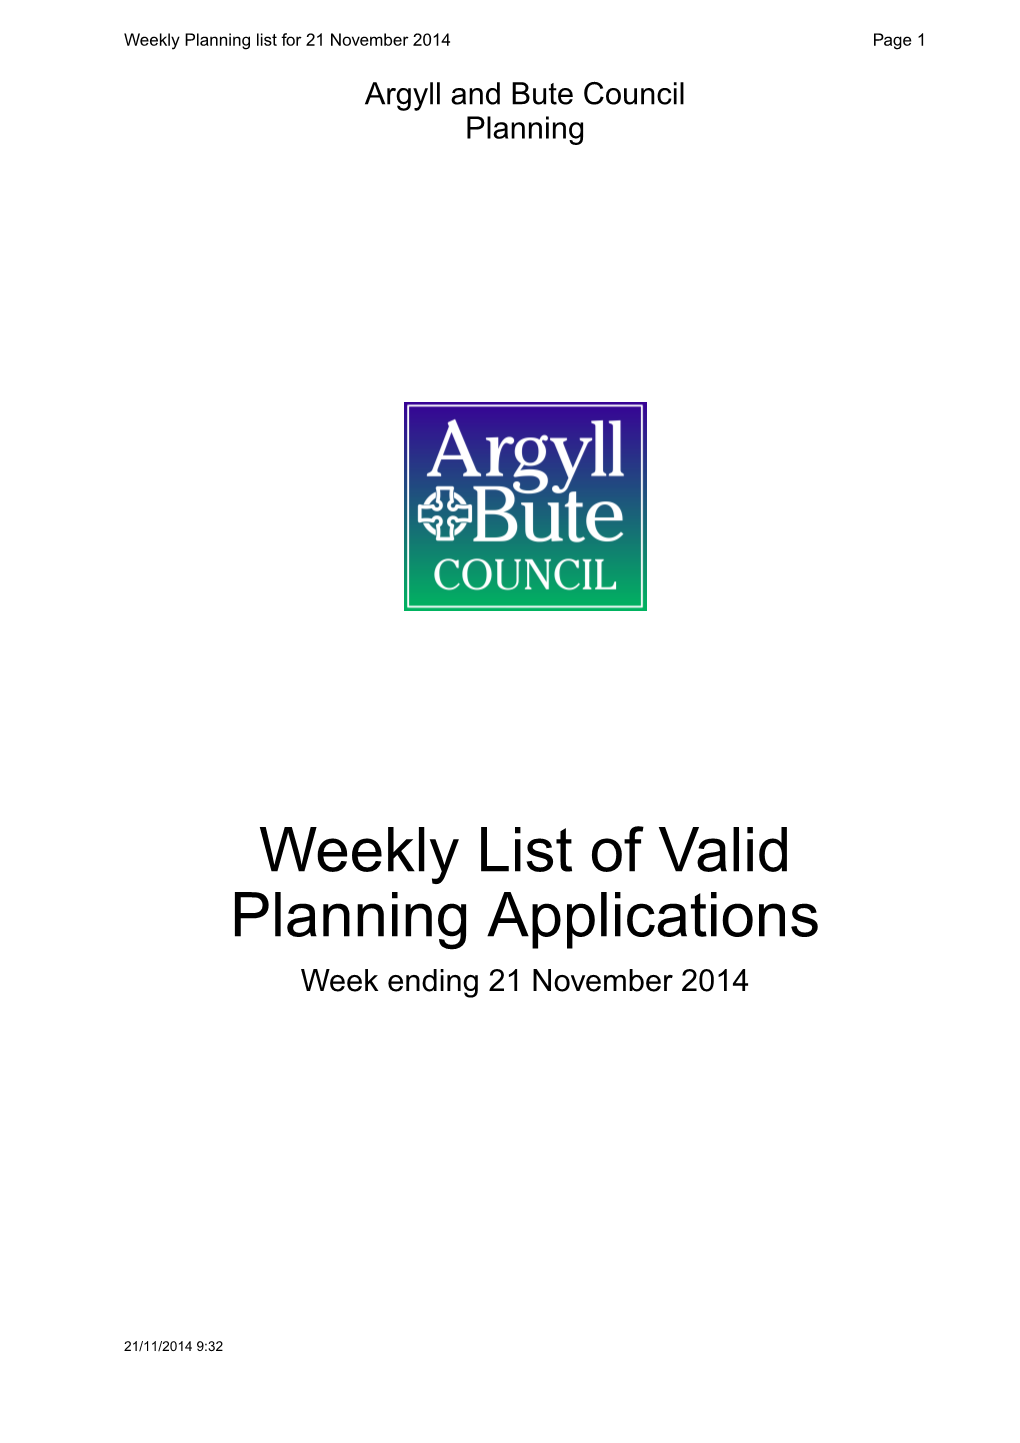 Weekly List of Valid Planning Applications Week Ending 21 November 2014